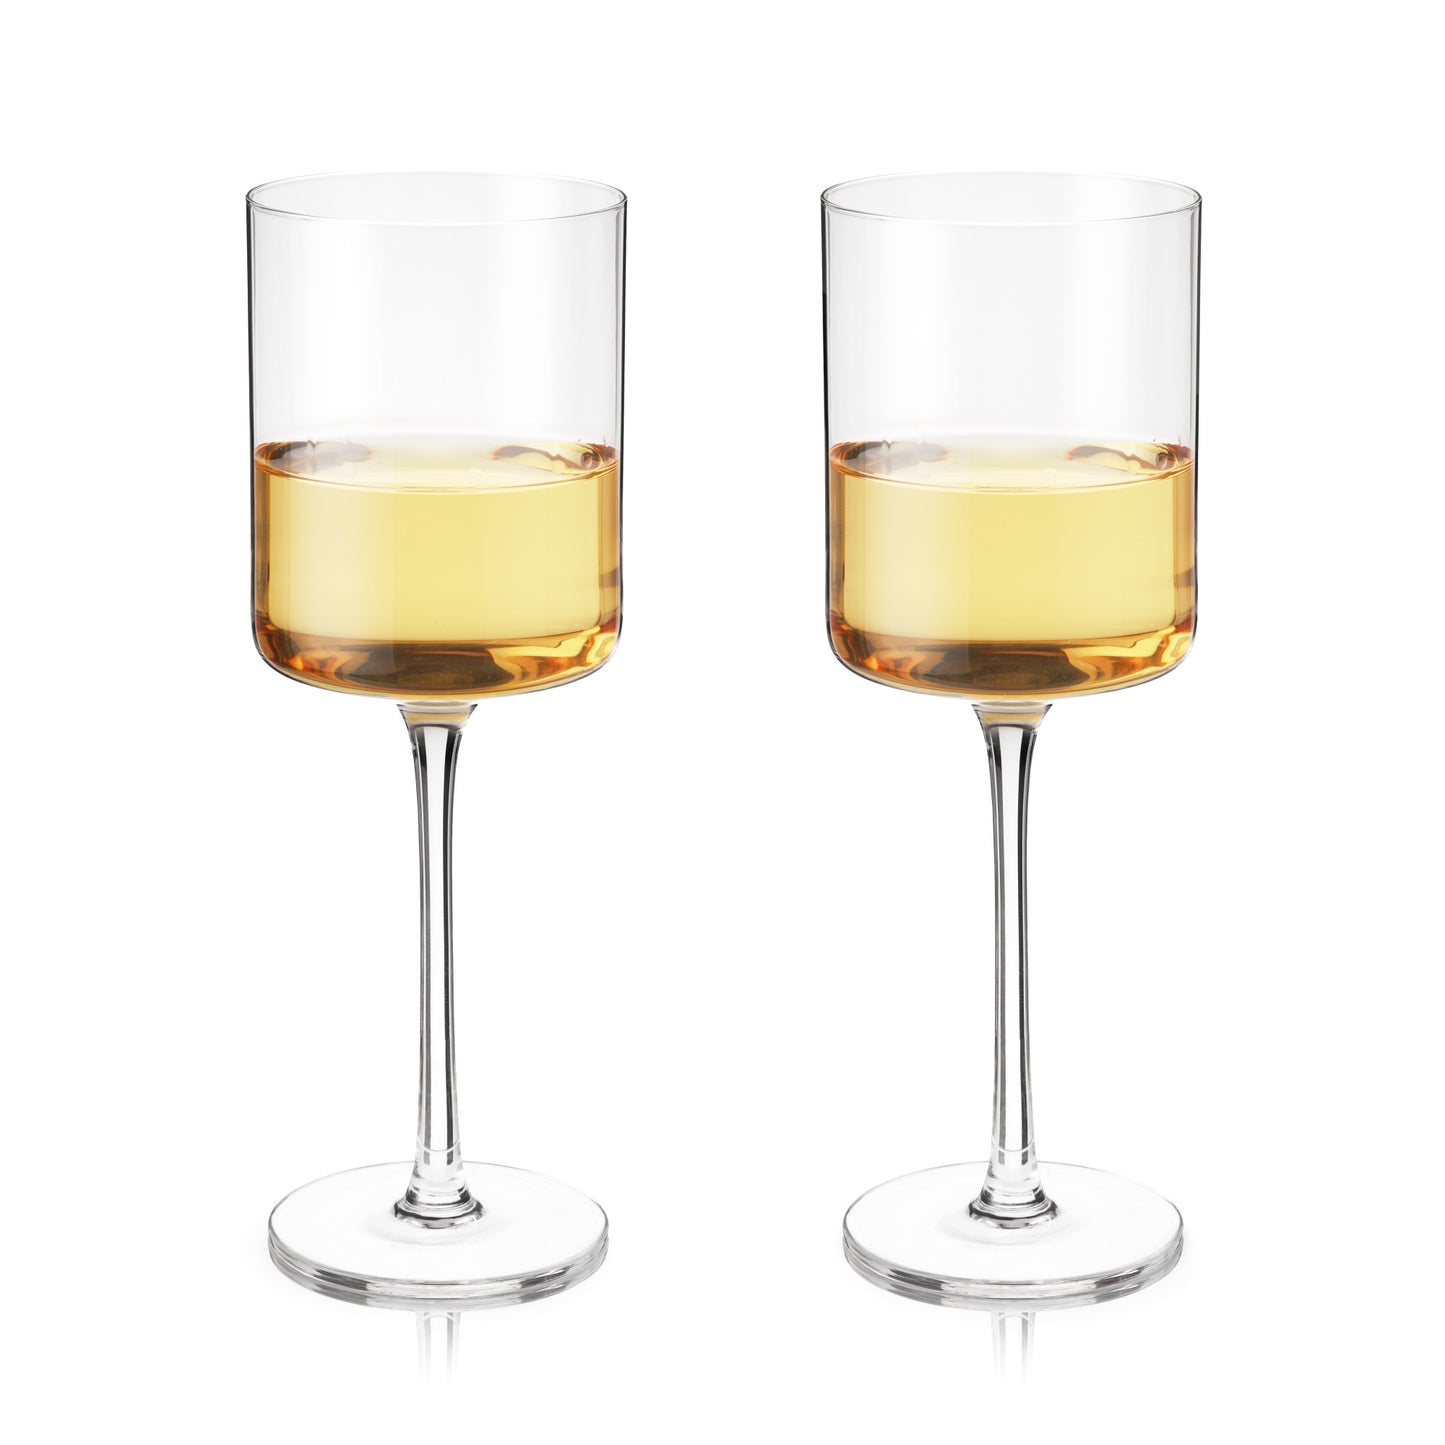 Laurel White Wine Glasses by Viski-0